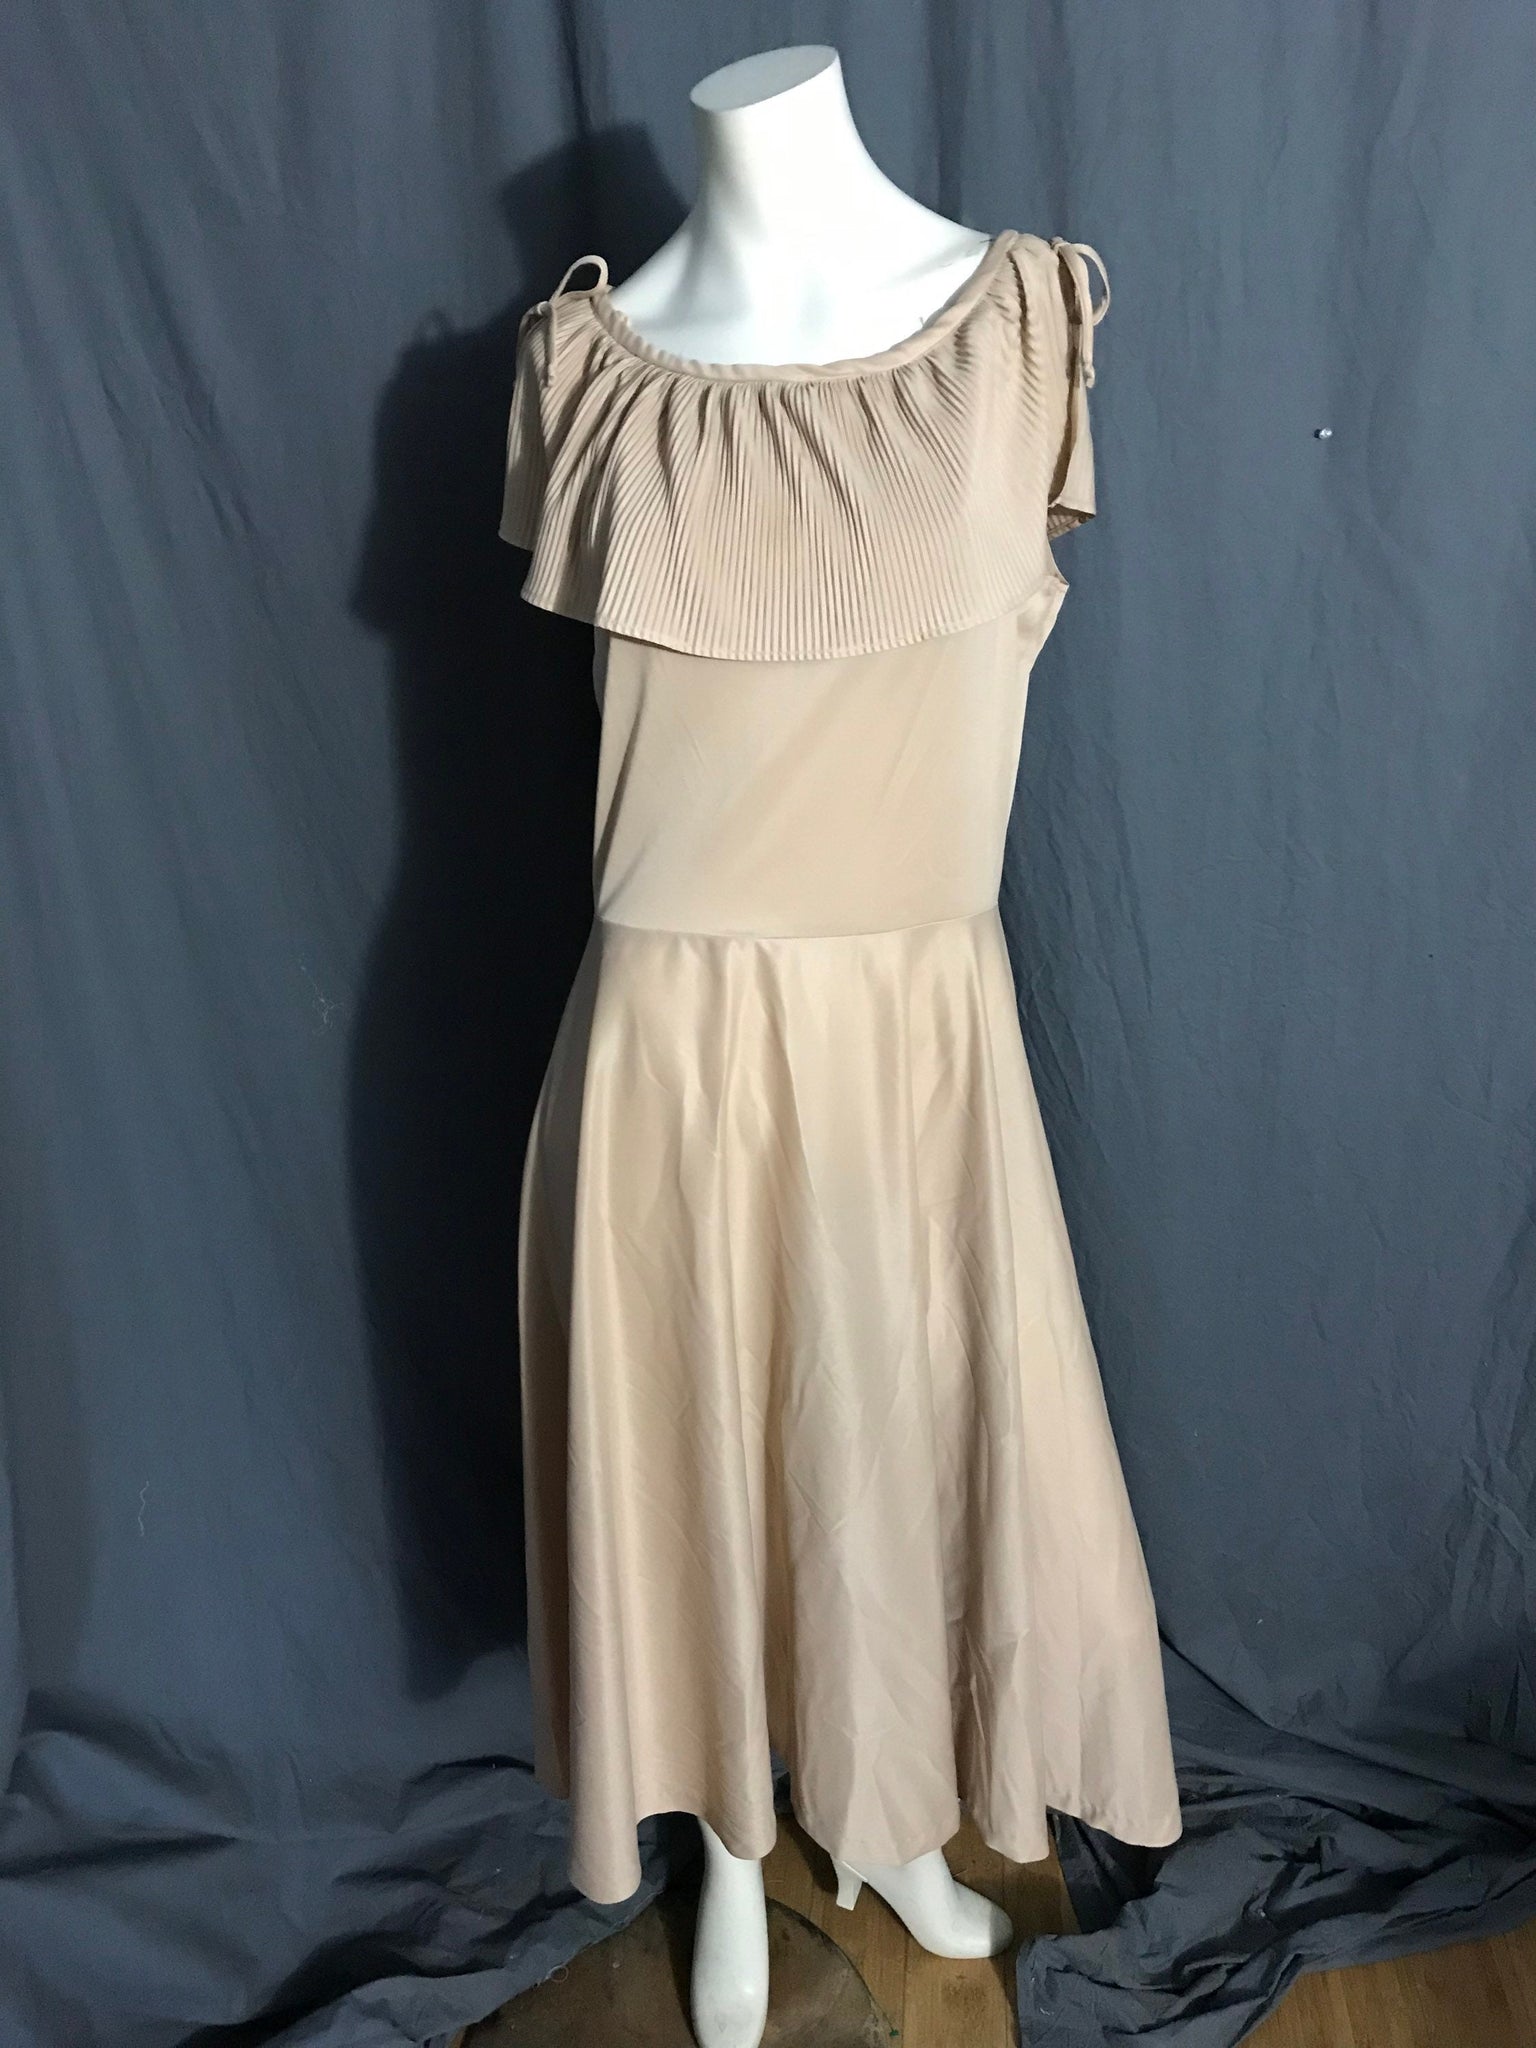 Vintage tan 1970’s polyester dress L